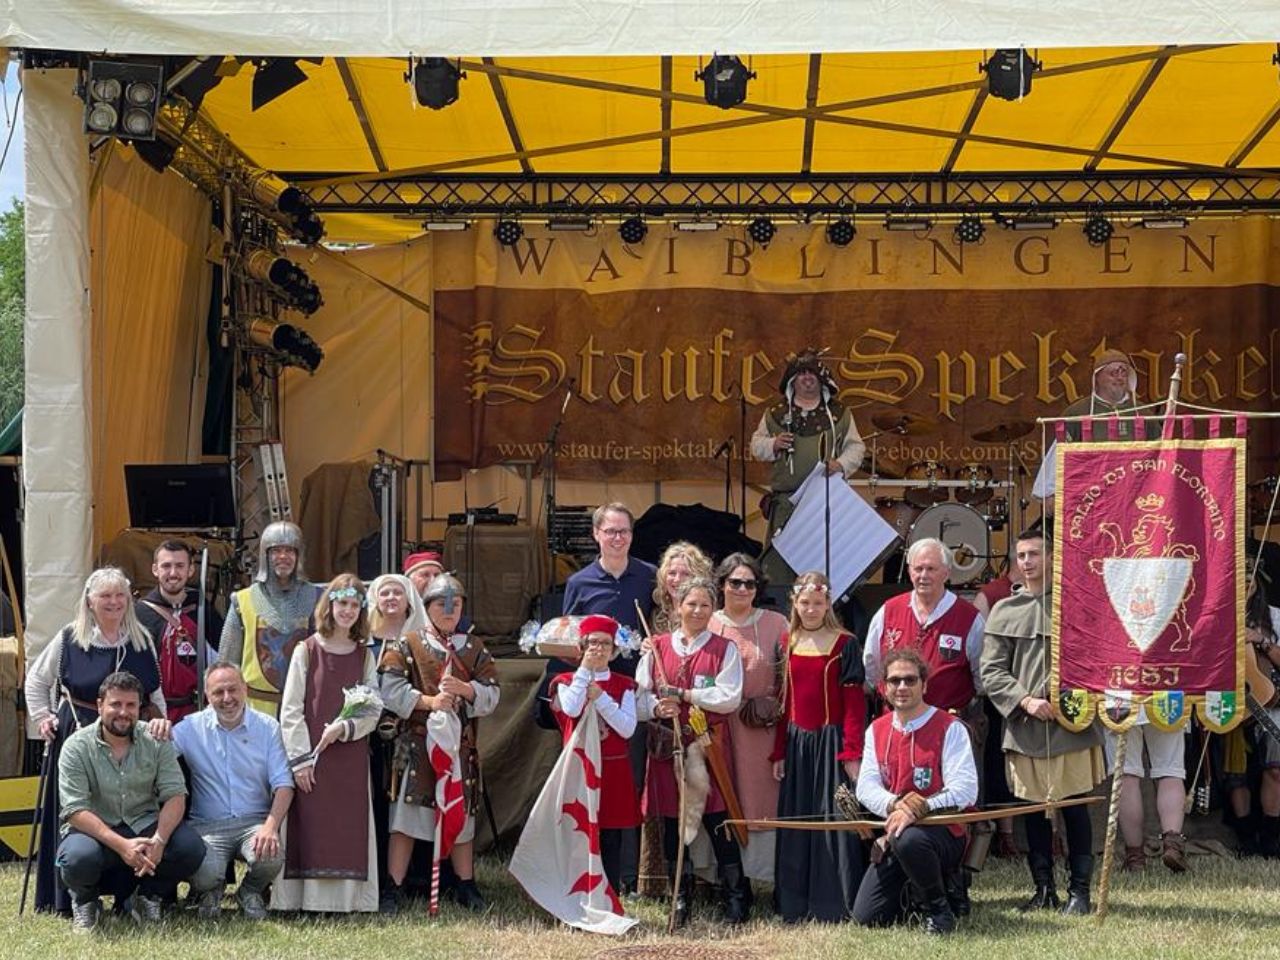 Ente Palio ed amministrazione alla festa medievale di Waiblingen